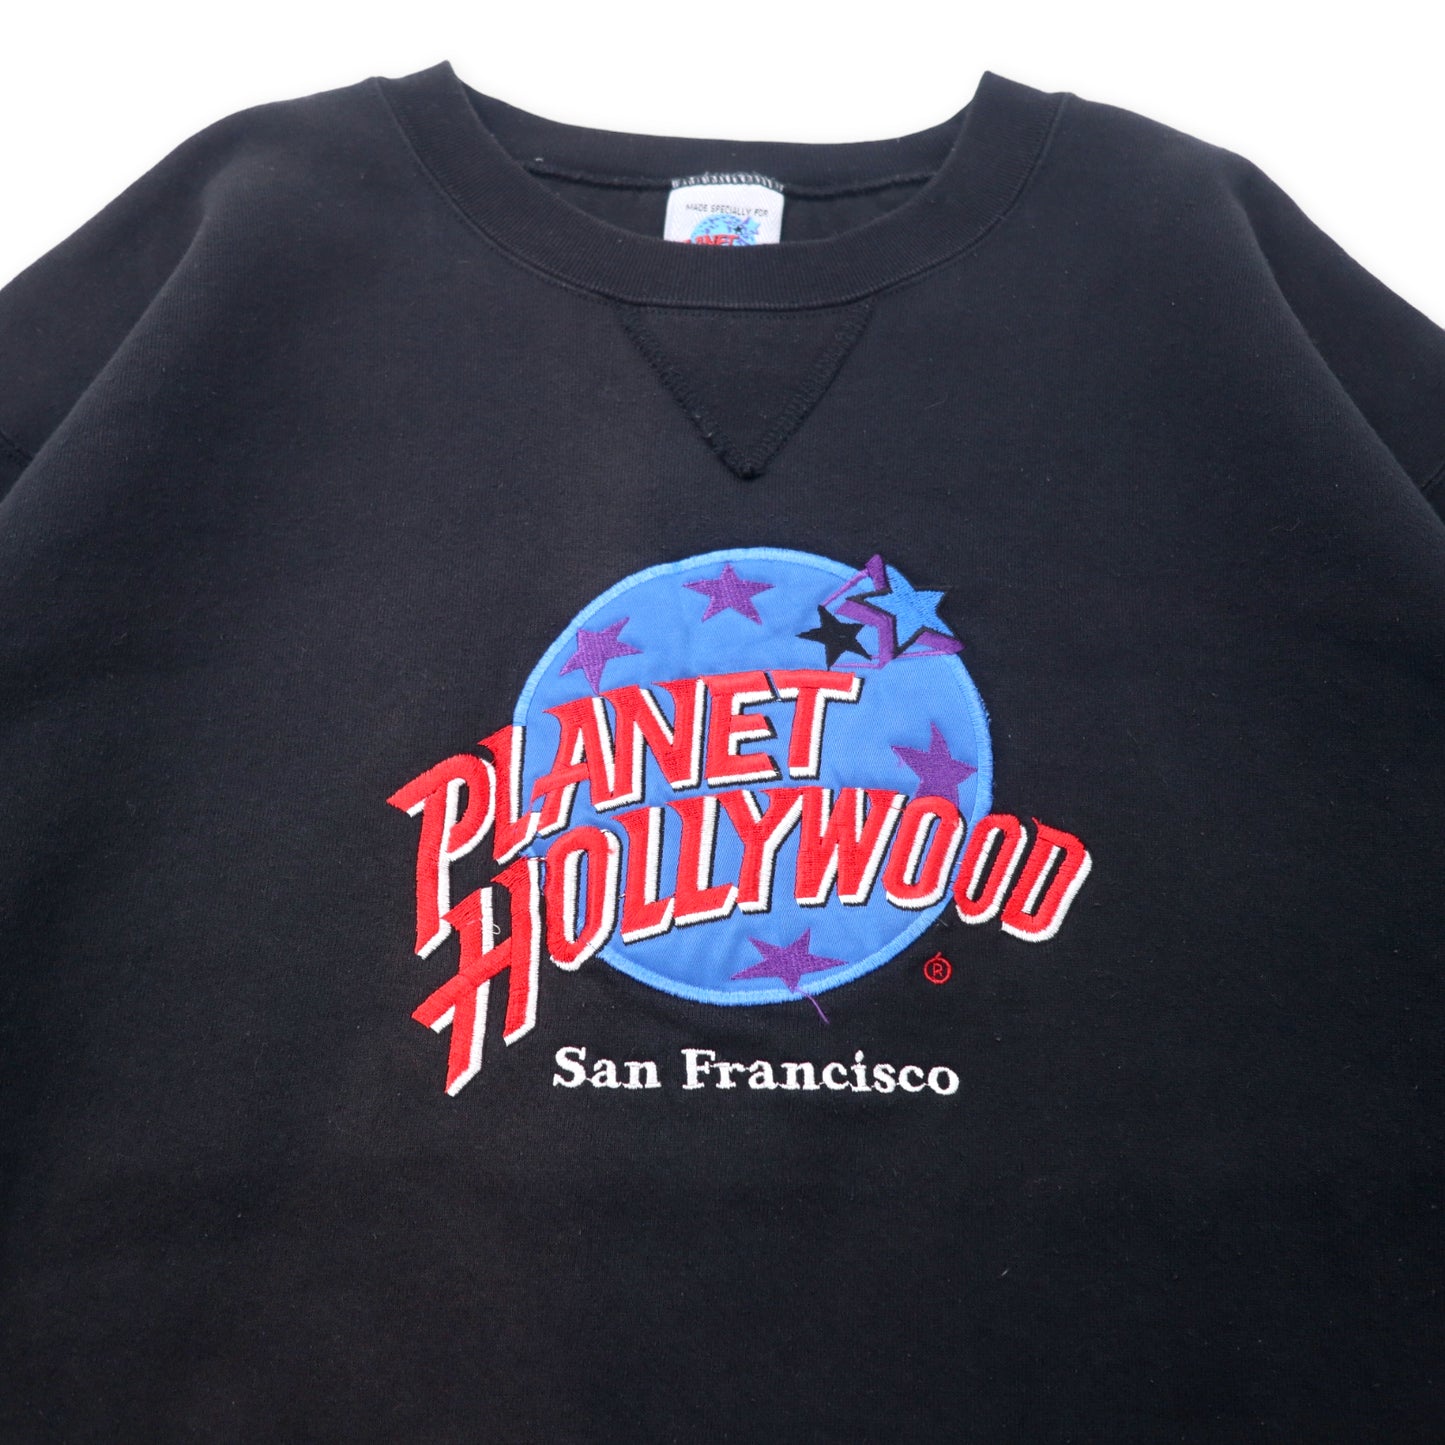 PLANET HOLLYWOOD USA製 90年代 ロゴ刺繍 スウェット XL ブラック コットン 裏起毛 San Francisco ビッグサイズ